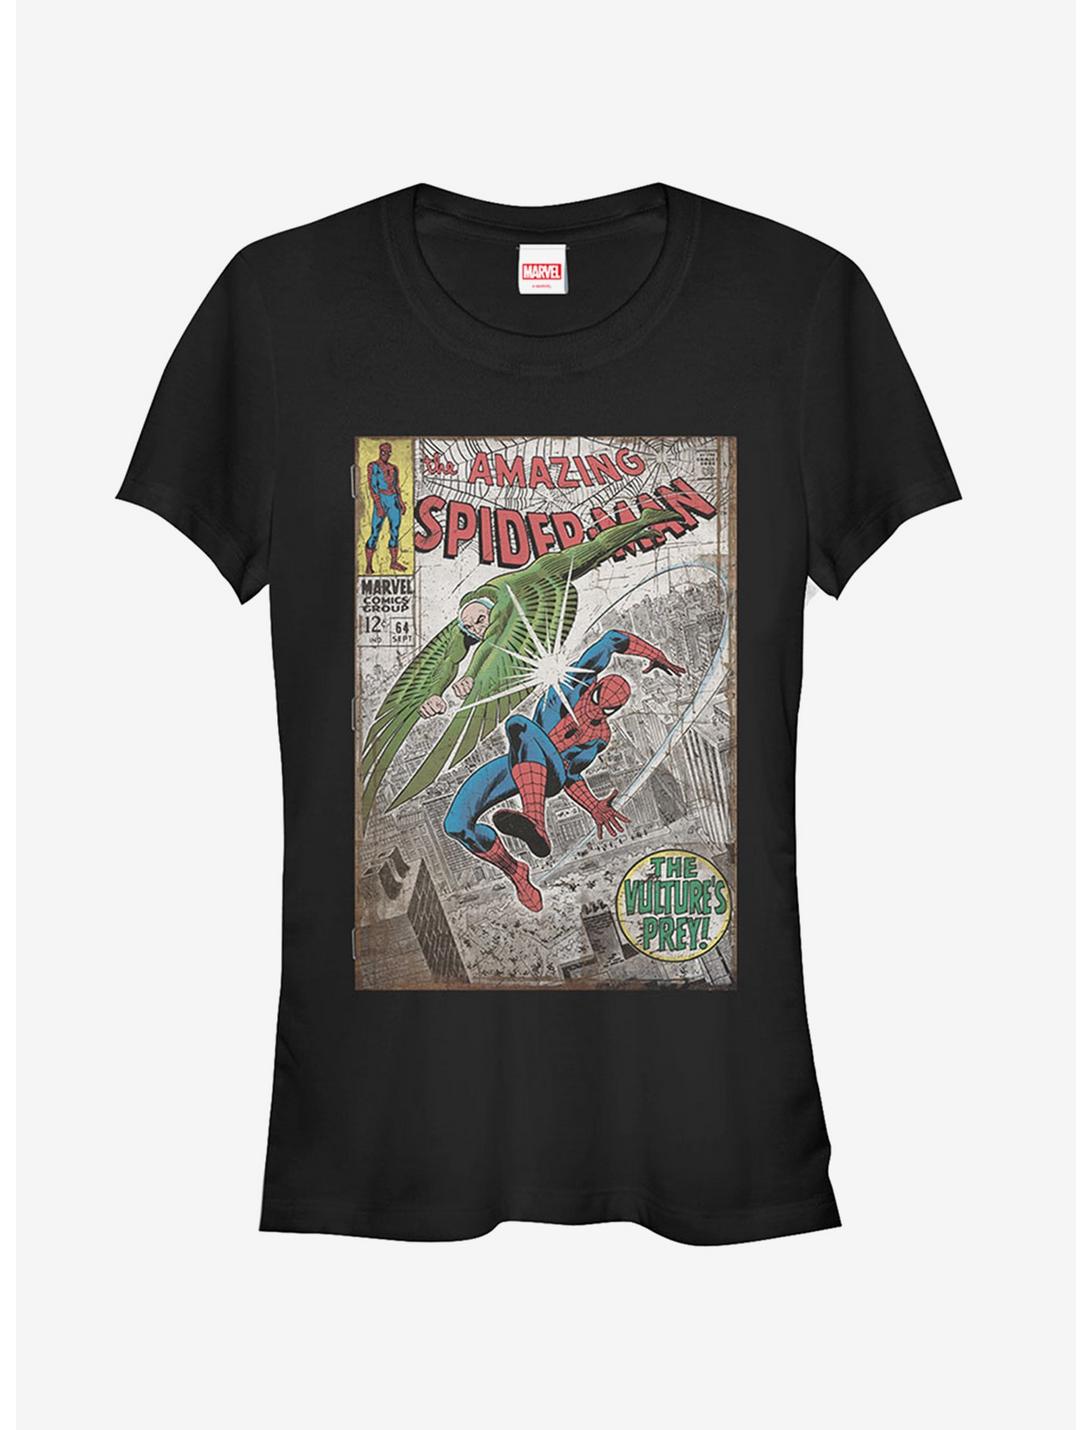 Marvel Spider-Man Vulture's Prey Girls T-Shirt, BLACK, hi-res